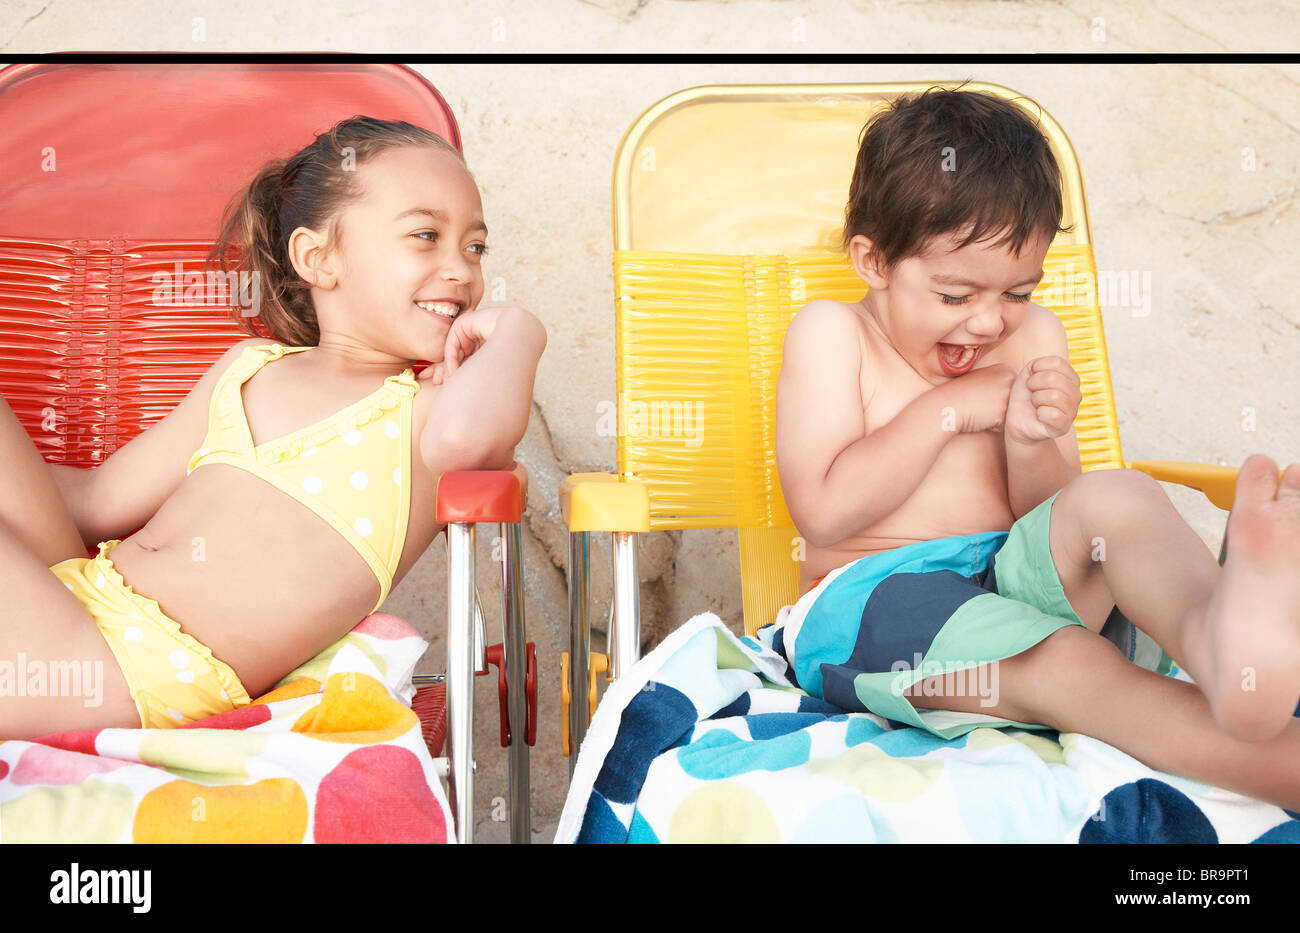 Kinder in Badeanzügen auf Liegestühlen Stockfoto